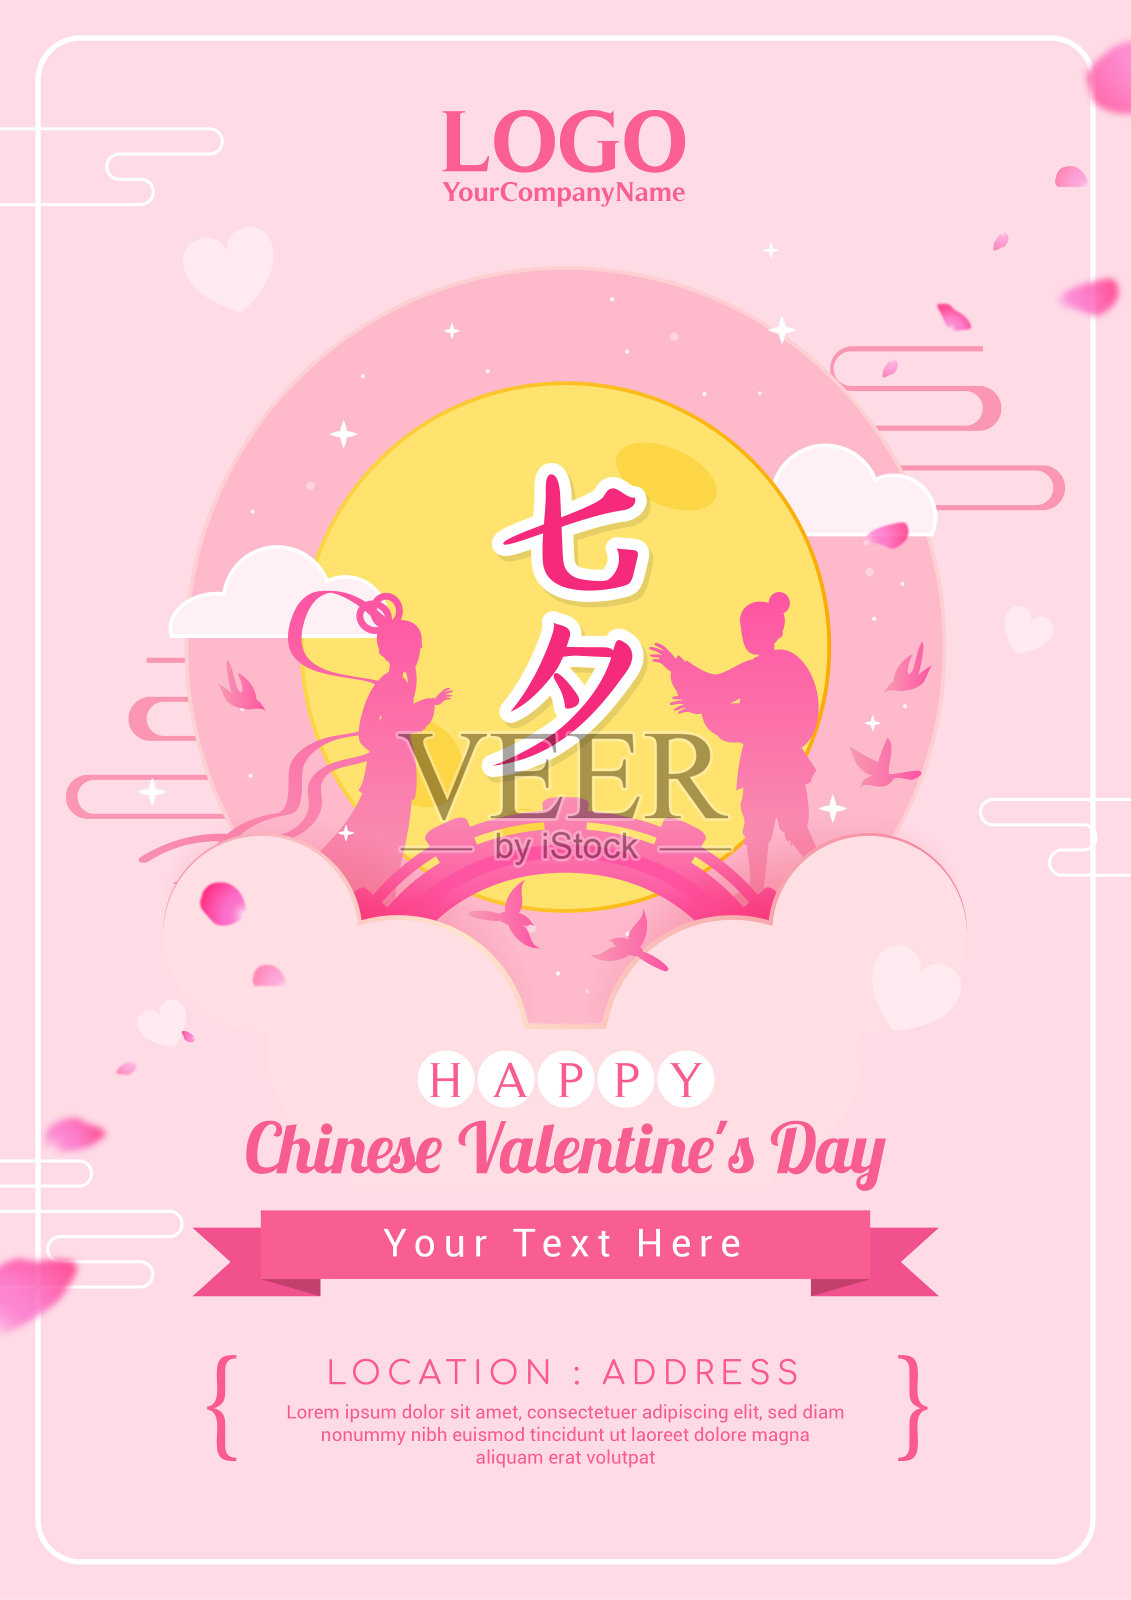 (中国情人节)海报邀请矢量插画。传单设计。中文写的是"七夕"设计模板素材